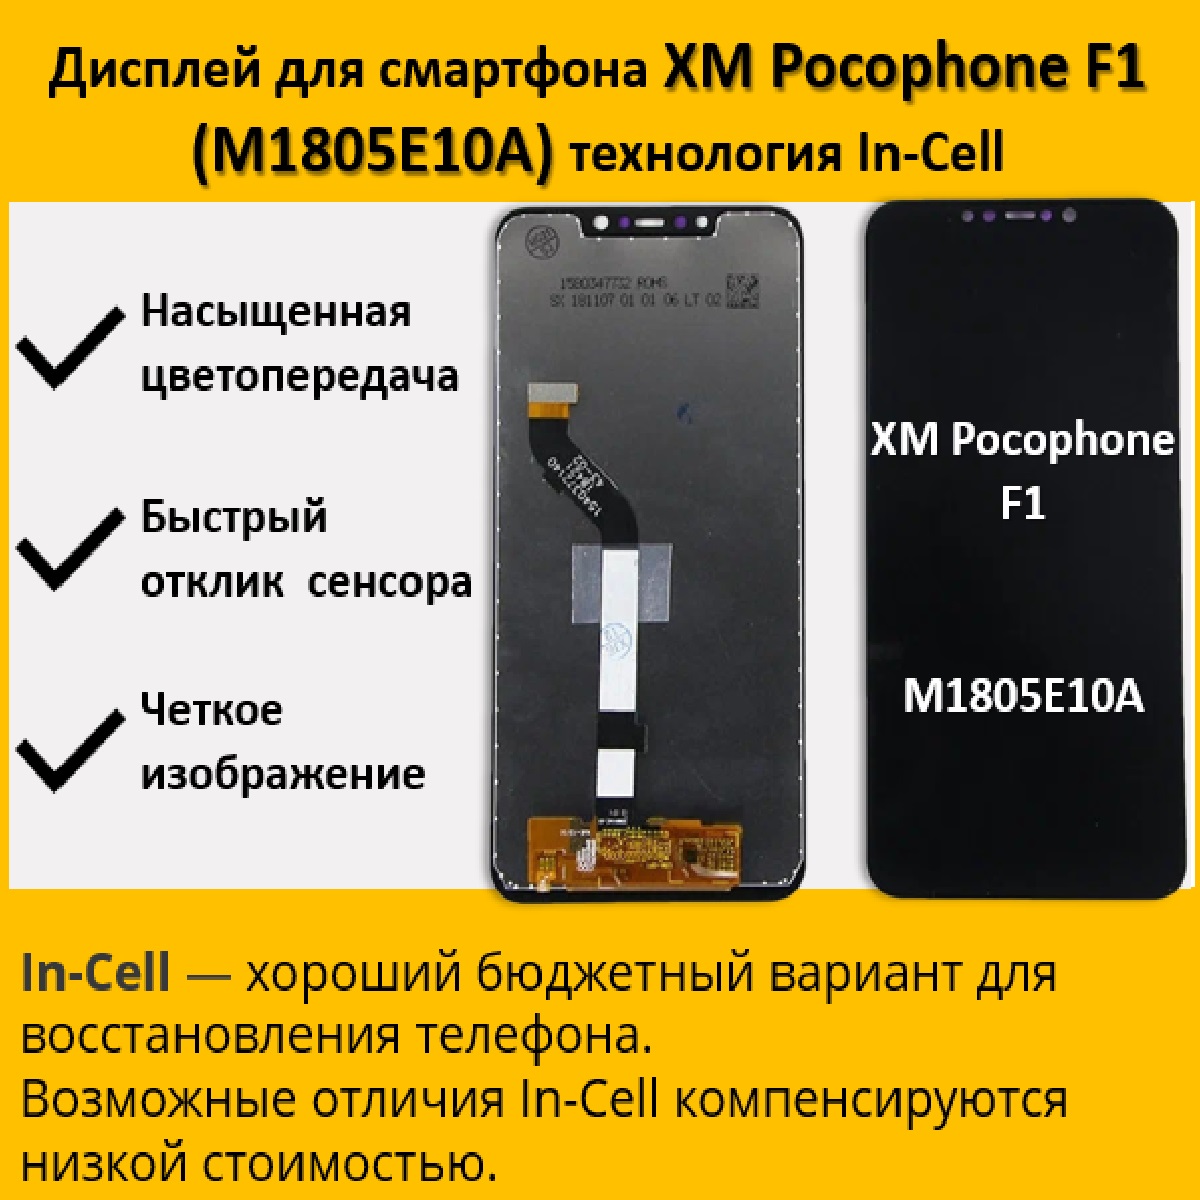 Дисплей для cмартфона Pocophone F1 (M1805E10A), технология In-Cell